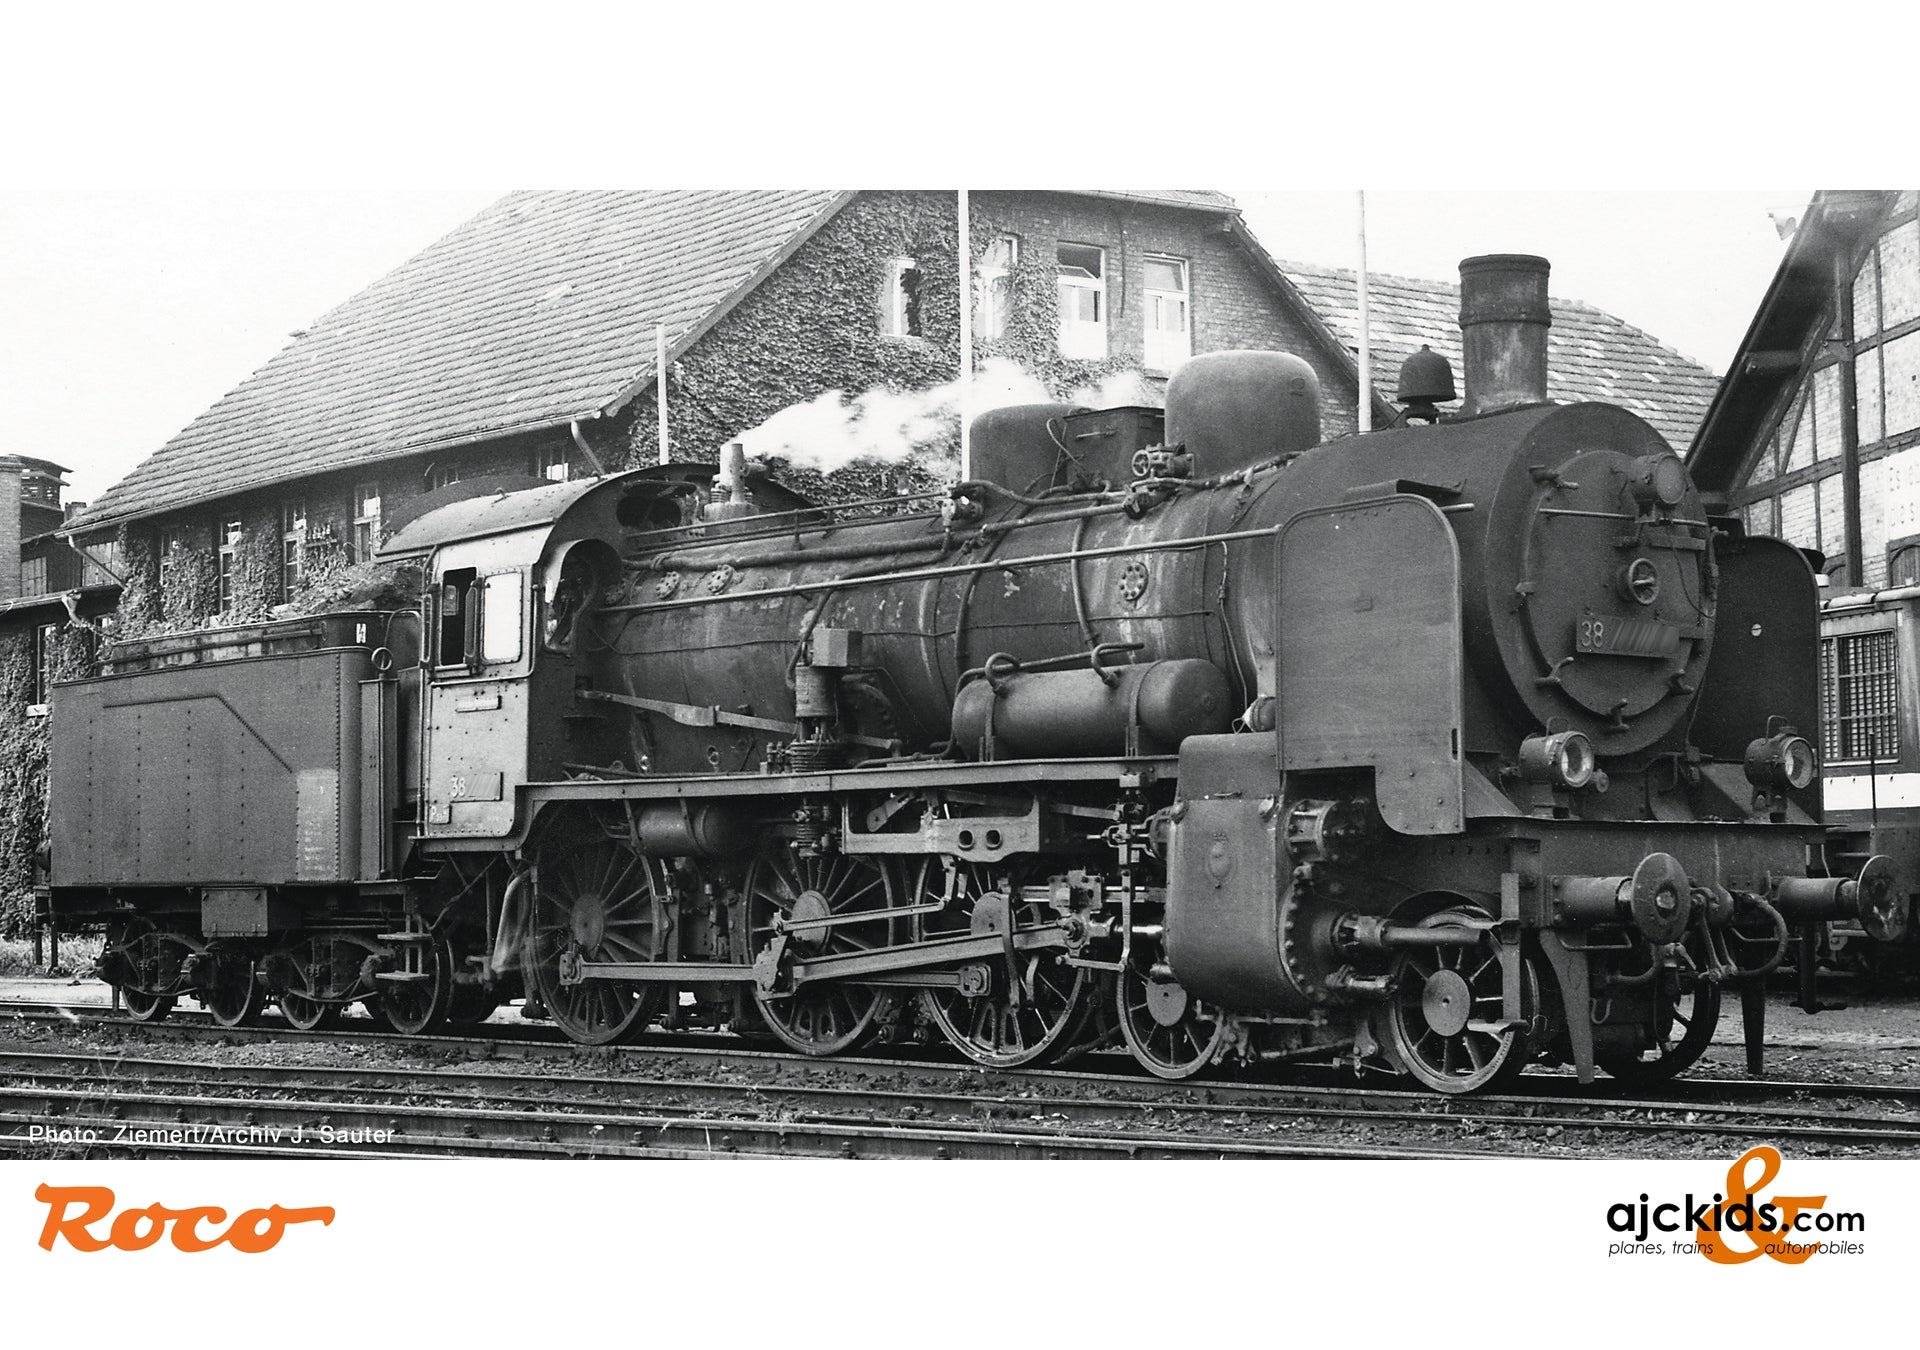 Roco 71381 - Steam locomotive class 38, DR at Ajckids.com